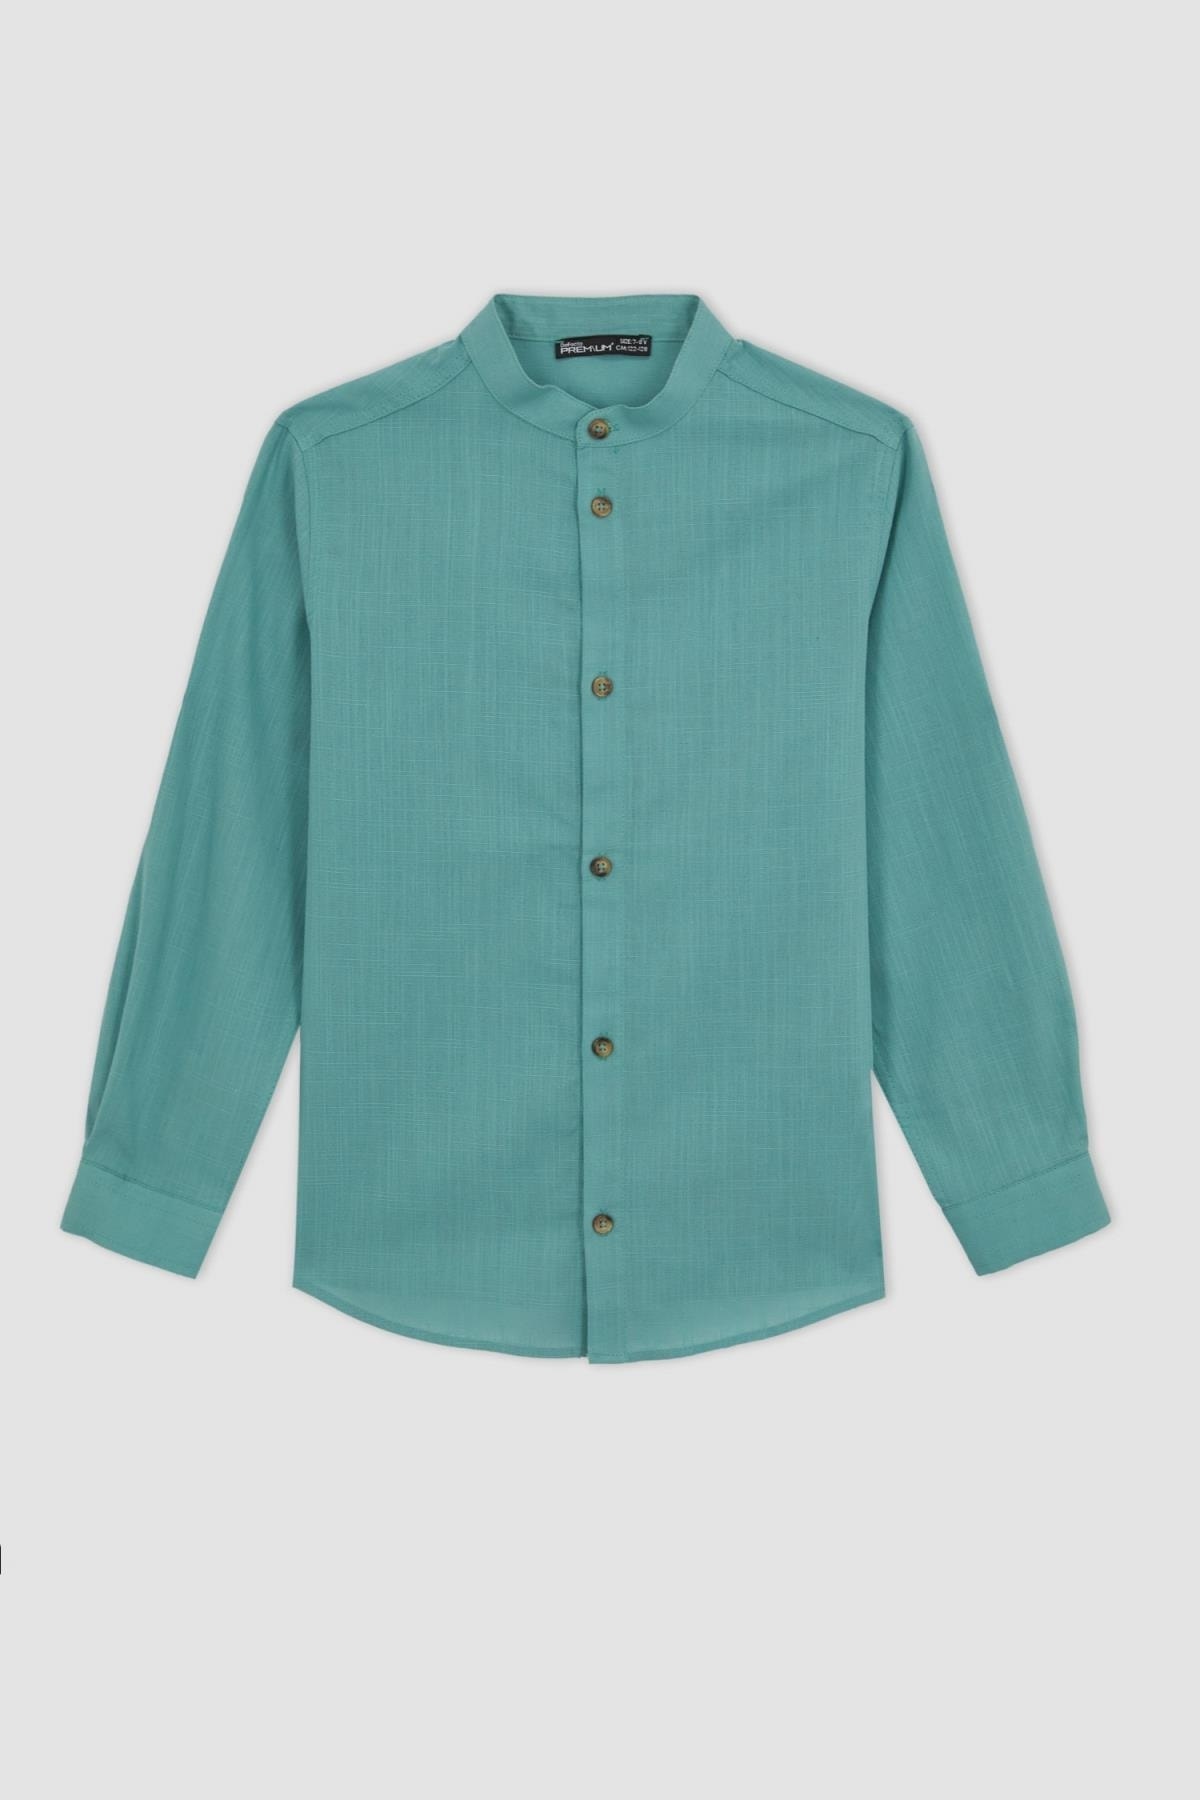 پیراهن آستین بلند یقه راسته سبز نیلی پسرانه دیفکتو Defacto